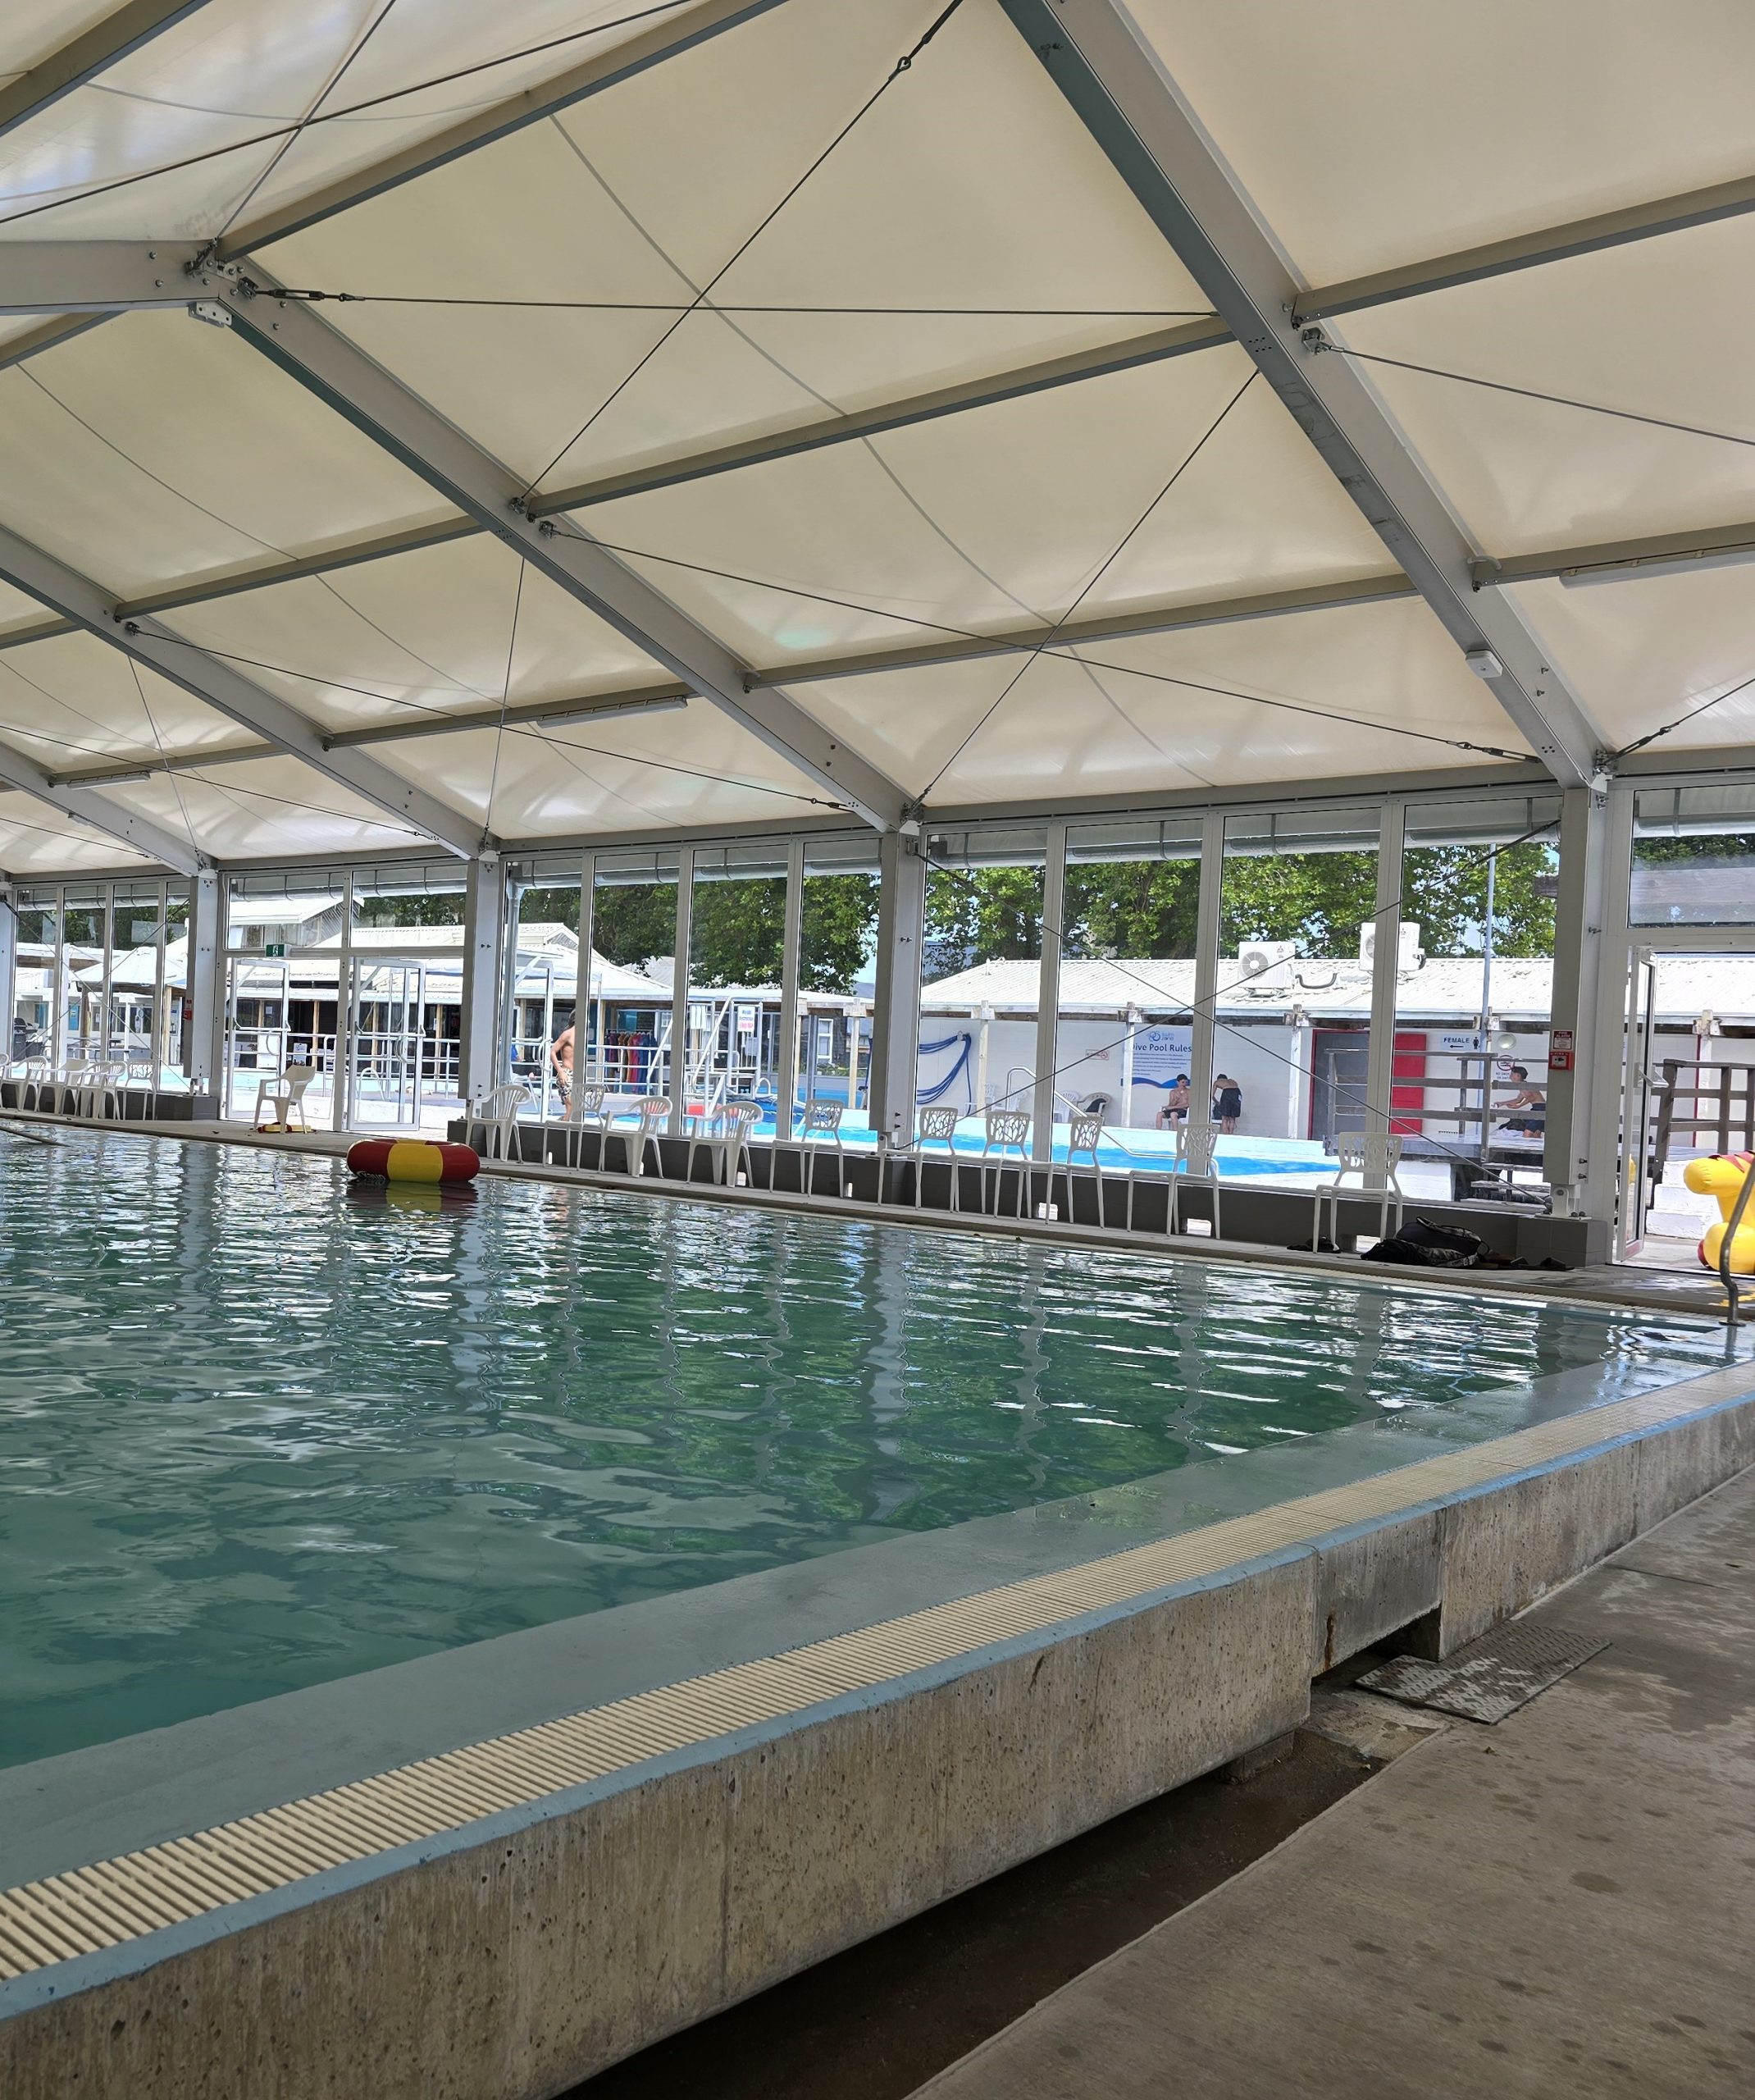 Swimming pool enclosure